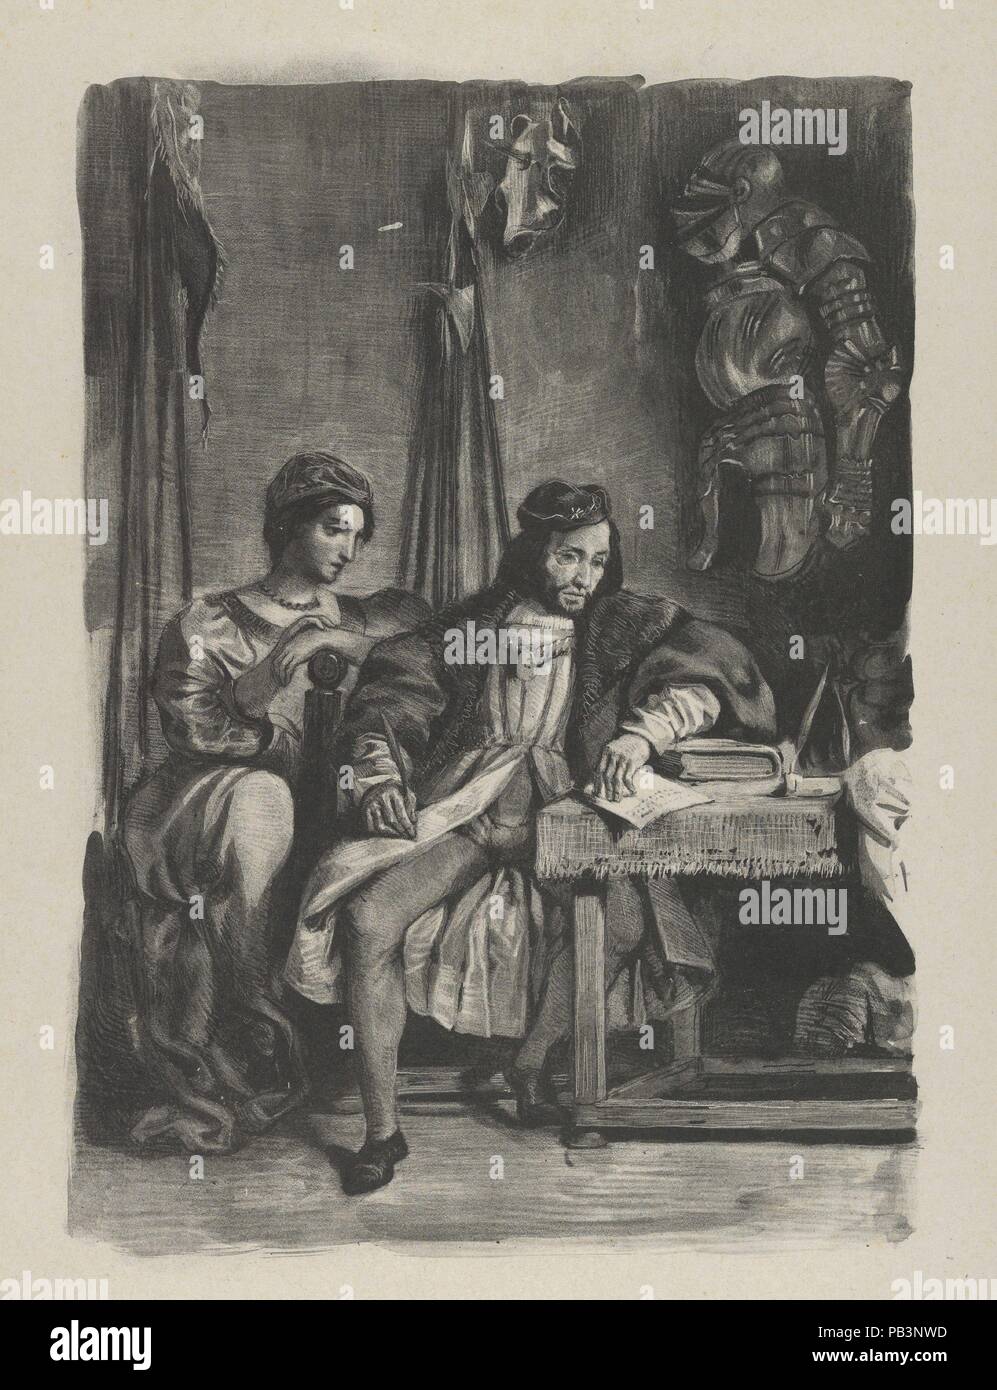 Goetz von Berlichingen scrivere le sue memorie. Artista: Eugène Delacroix (francese, Charenton-Saint-Maurice 1798 - 1863 Parigi). Dimensioni: Immagine: 10 7/16 x 7 9/16 in. (26,5 x 19,2 cm) foglio: 12 7/8 x 10 1/2 in. (32,7 x 26,7 cm). Serie/Portfolio: Goethe, Goetz von Berlichingen. Data: 1836-43. Il soggetto di questa stampa è basato su una scena in Goethe di gioco (pubblicato in tedesco nel 1773; e il francese nel 1823) che racconta la storia della vita di un cavaliere tedesco (1480-1562) che hanno combattuto per riconquistare i privilegi dei cavalieri libero, annullati dall'imperatore Massimiliano I nel 1495. Questa litografia è il quarto Foto Stock